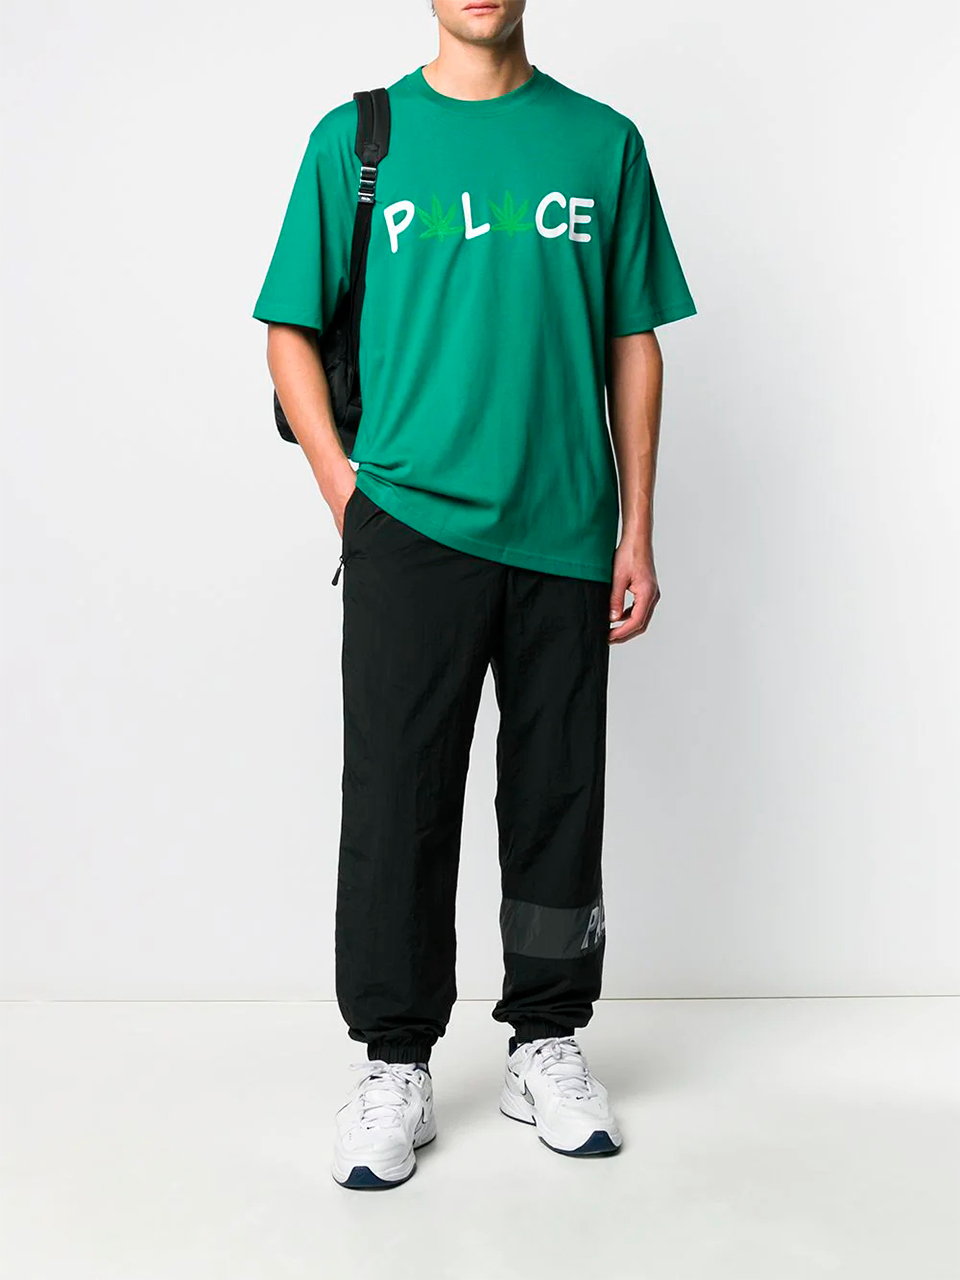 Imagem de: Camiseta Palace Verde Estampa Pwlwce